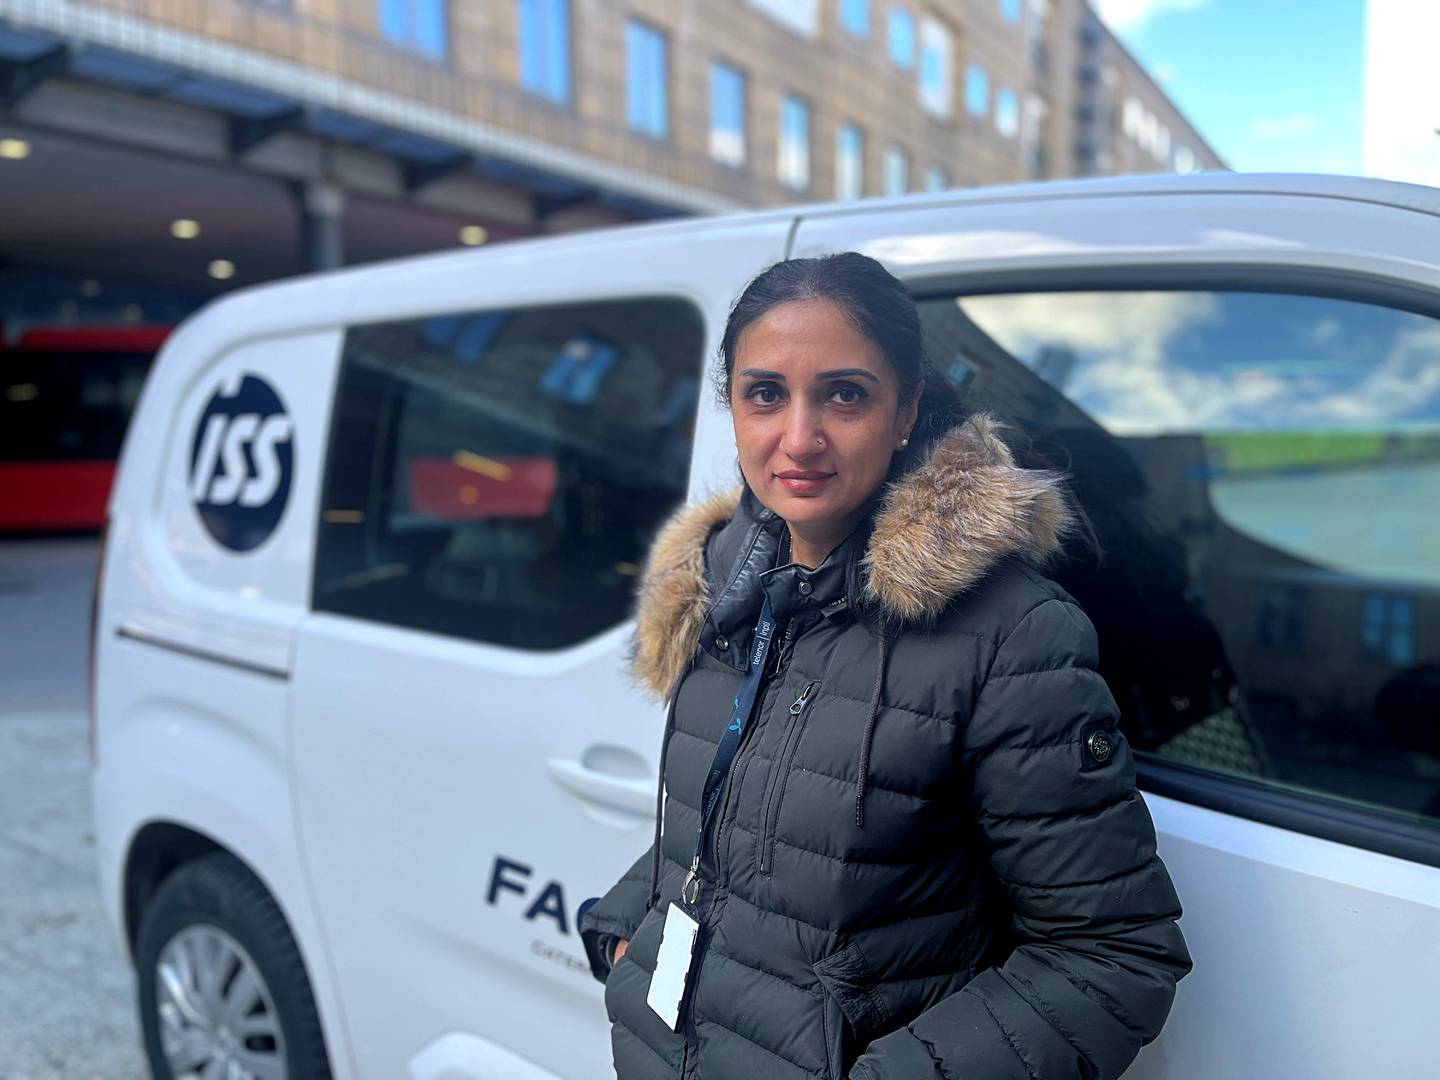 Neeta Bhardwaj har jobbet som renholder i ISS i 11 år. Hun mener det er på tide at jobben hun og kollegene gjør i samfunnet blir høyere verdsatt.